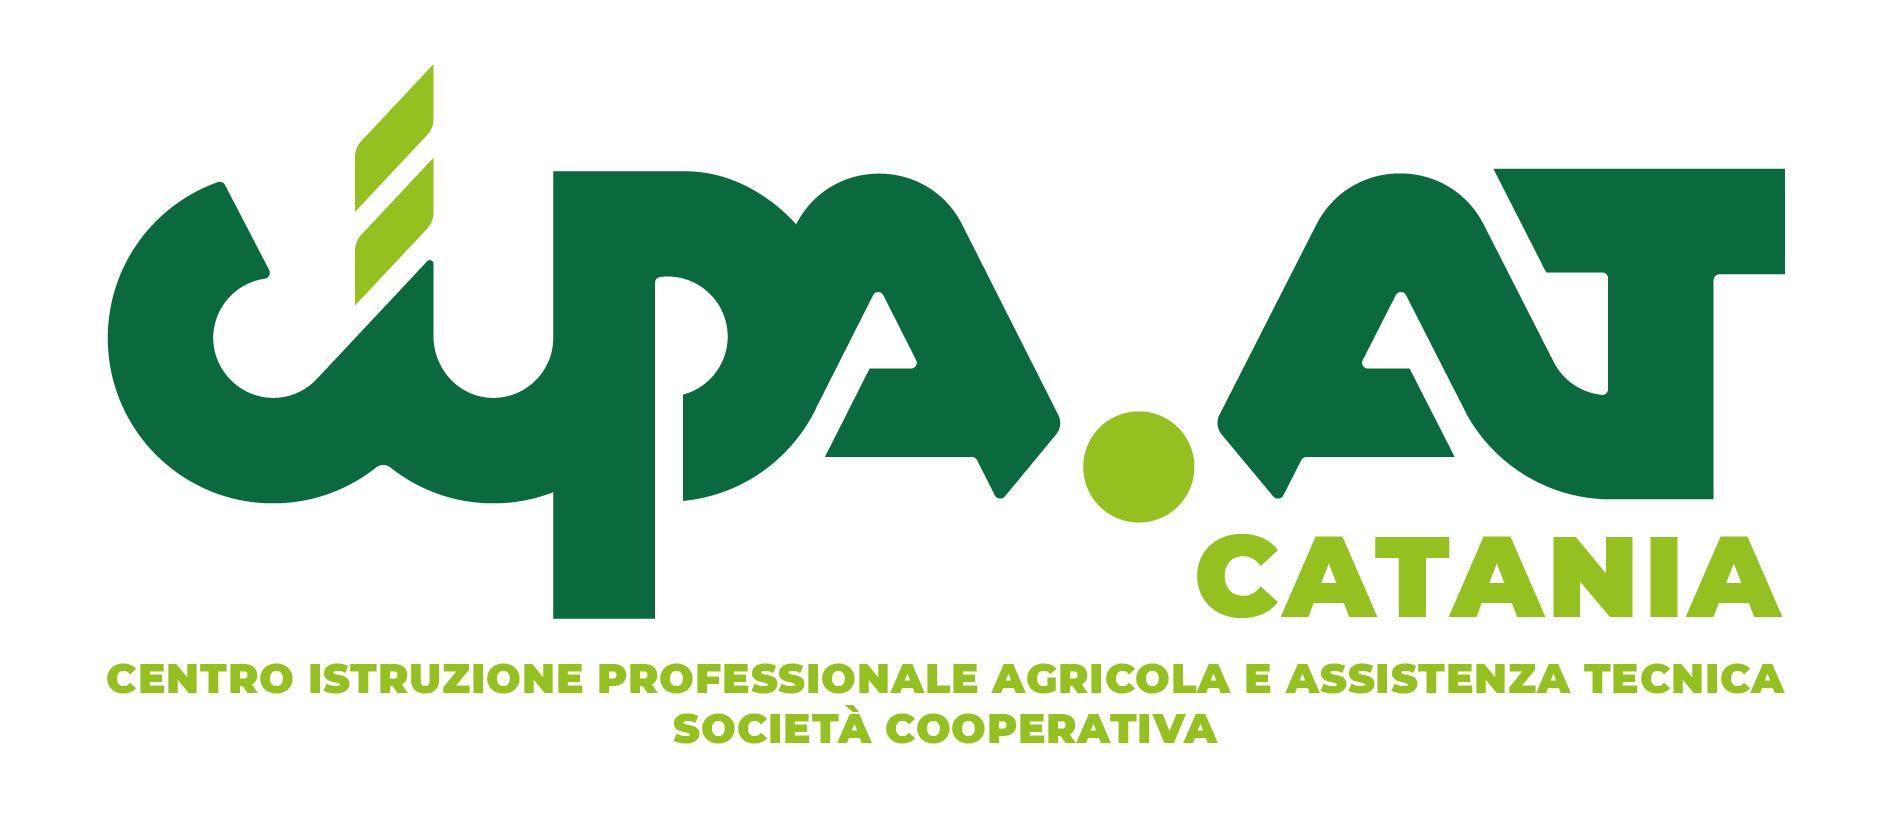 CIPA-AT Catania Soc.Coop.